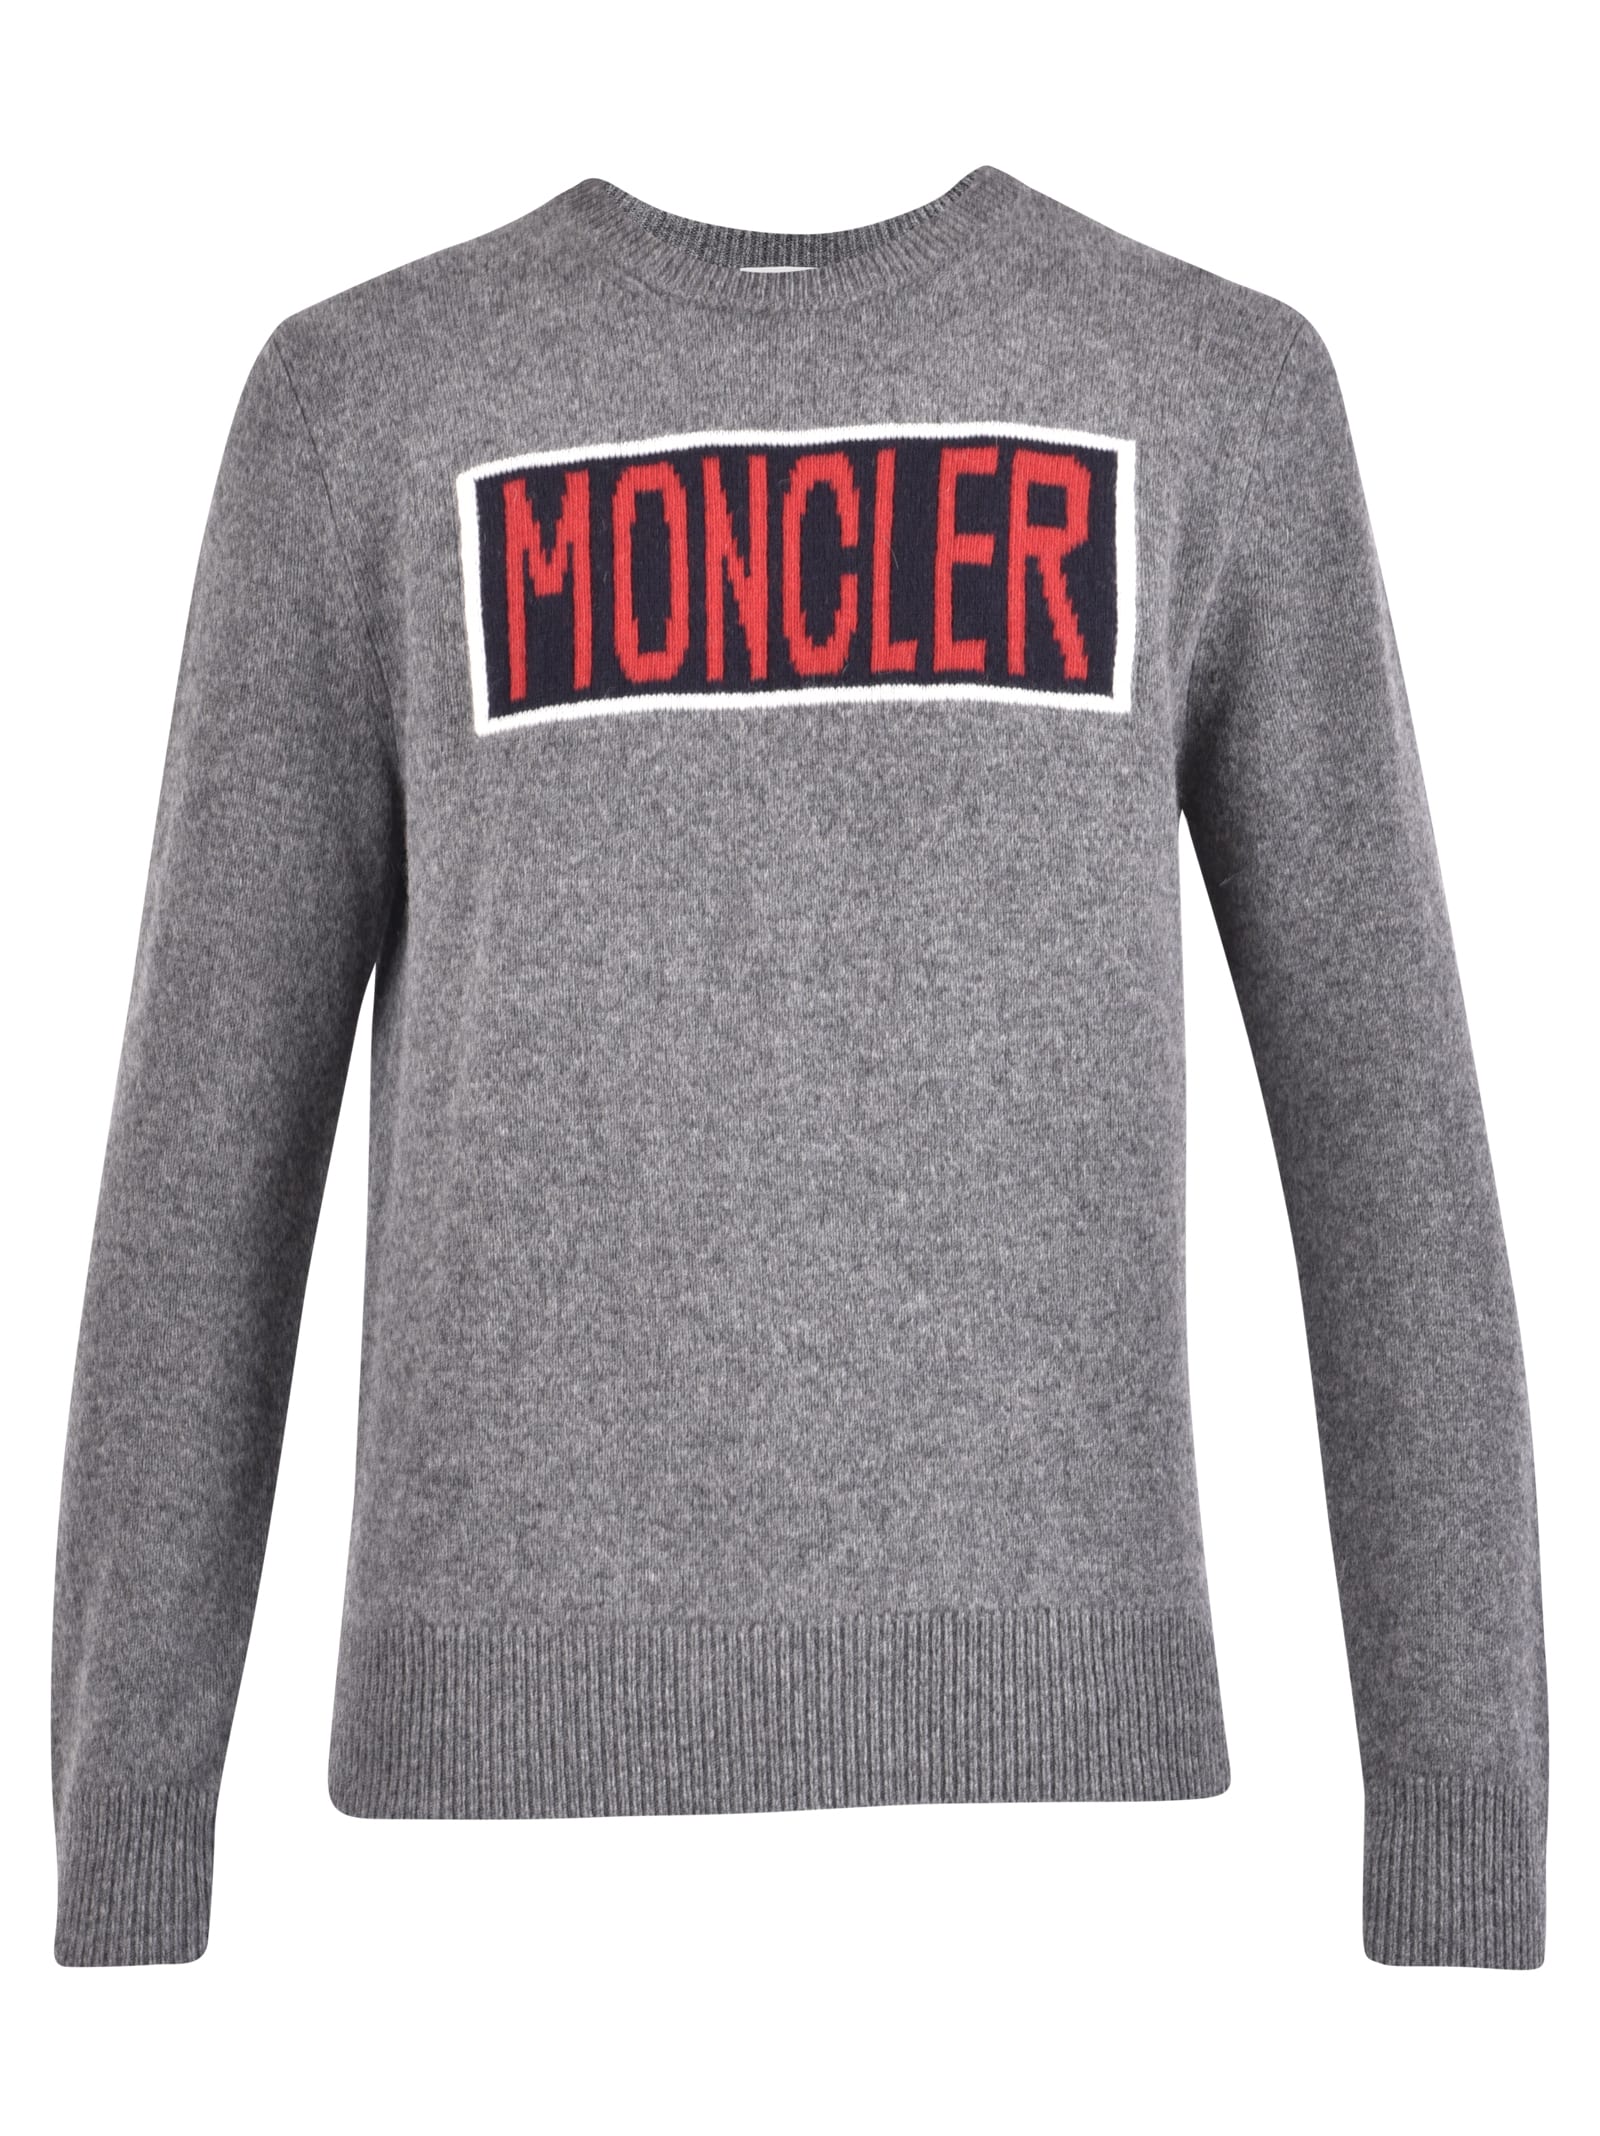 MONCLER BRANDED jumper,11139614